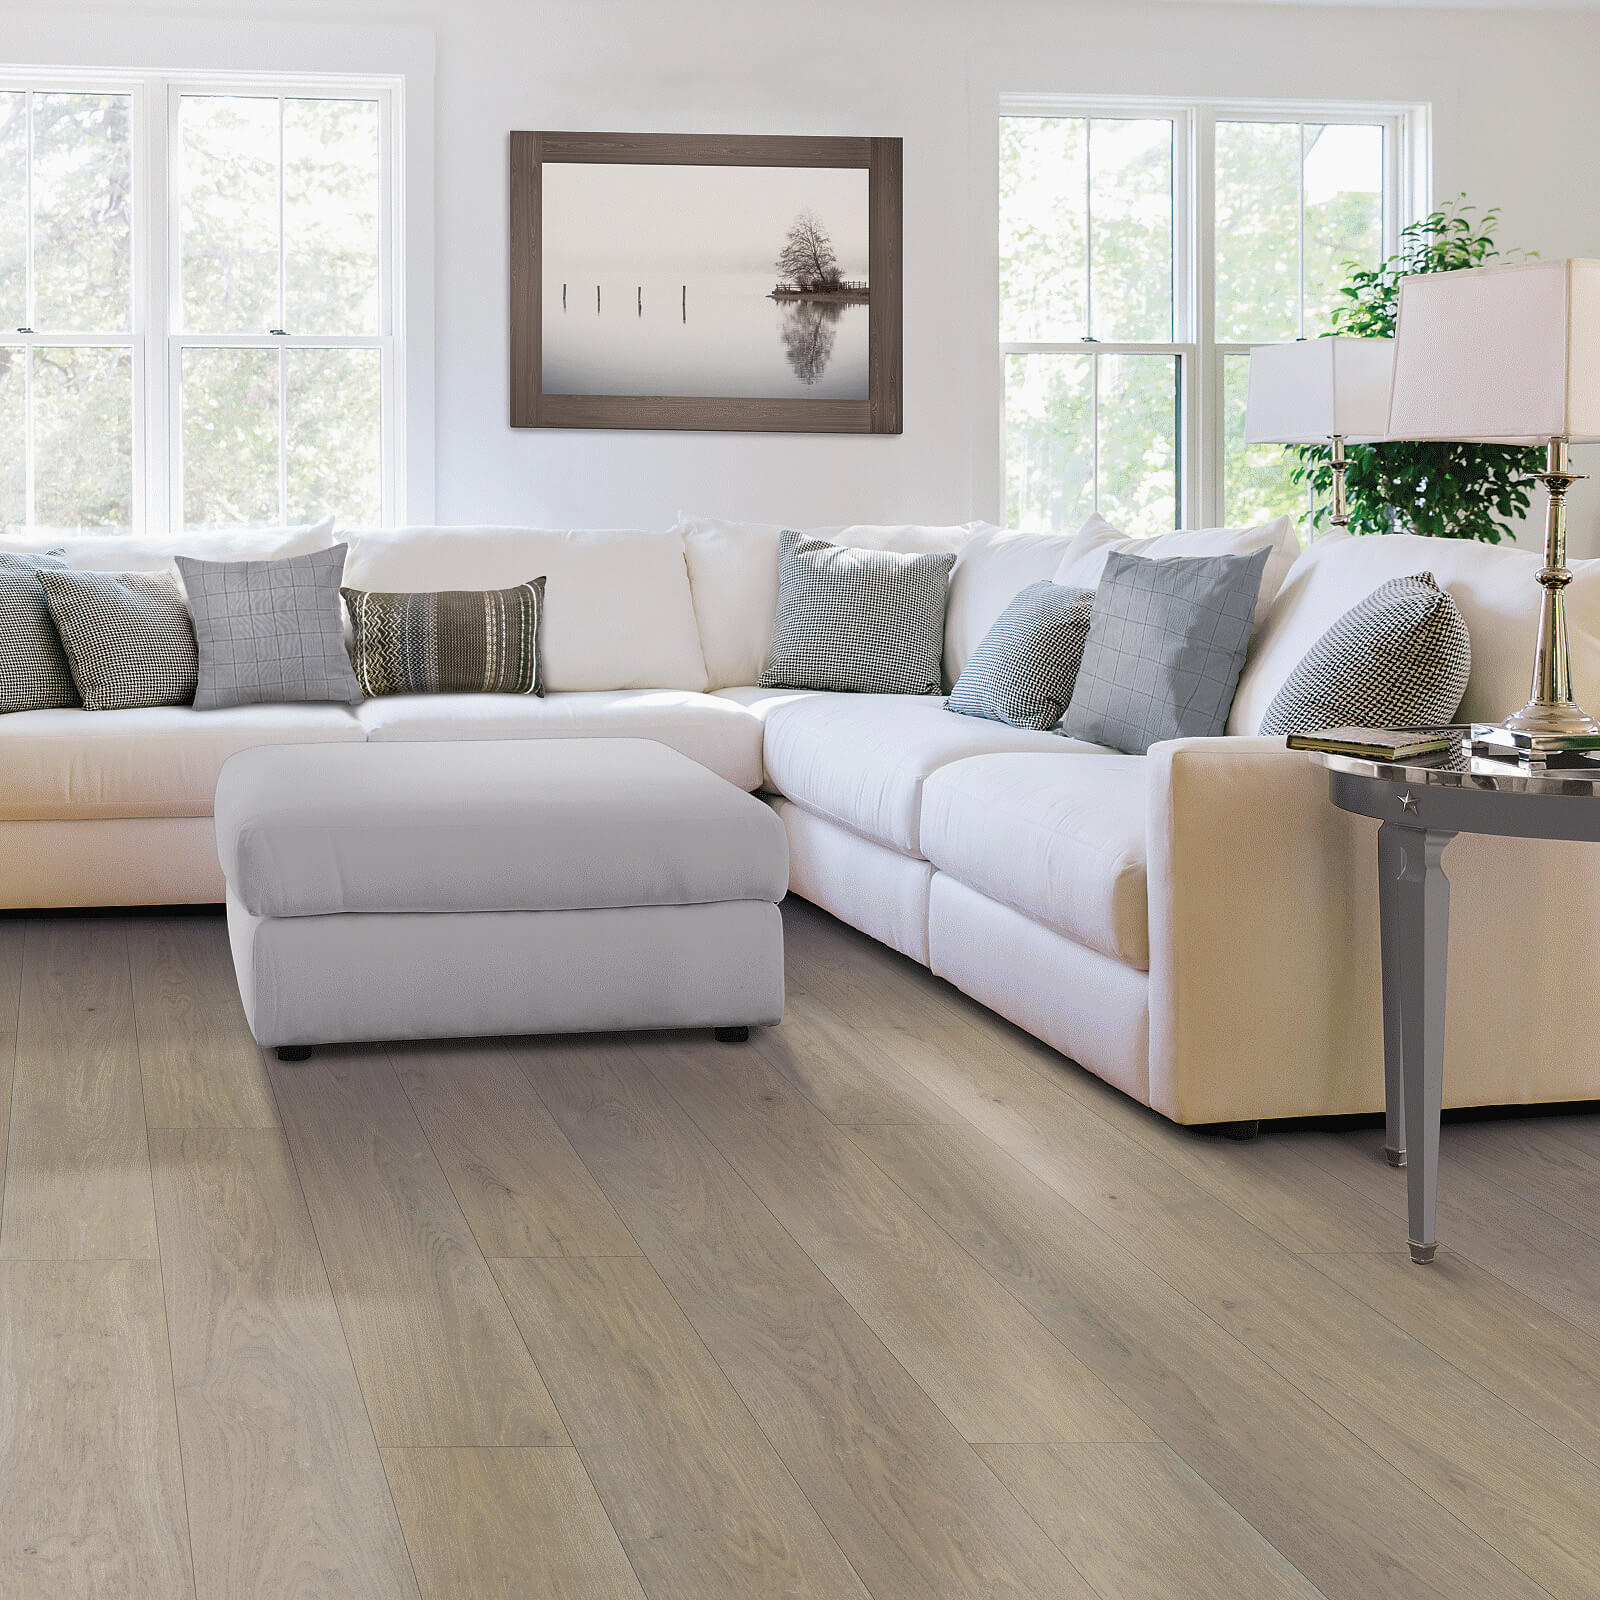 Modern living room hardwood flooring | Carpet And Floors For Less